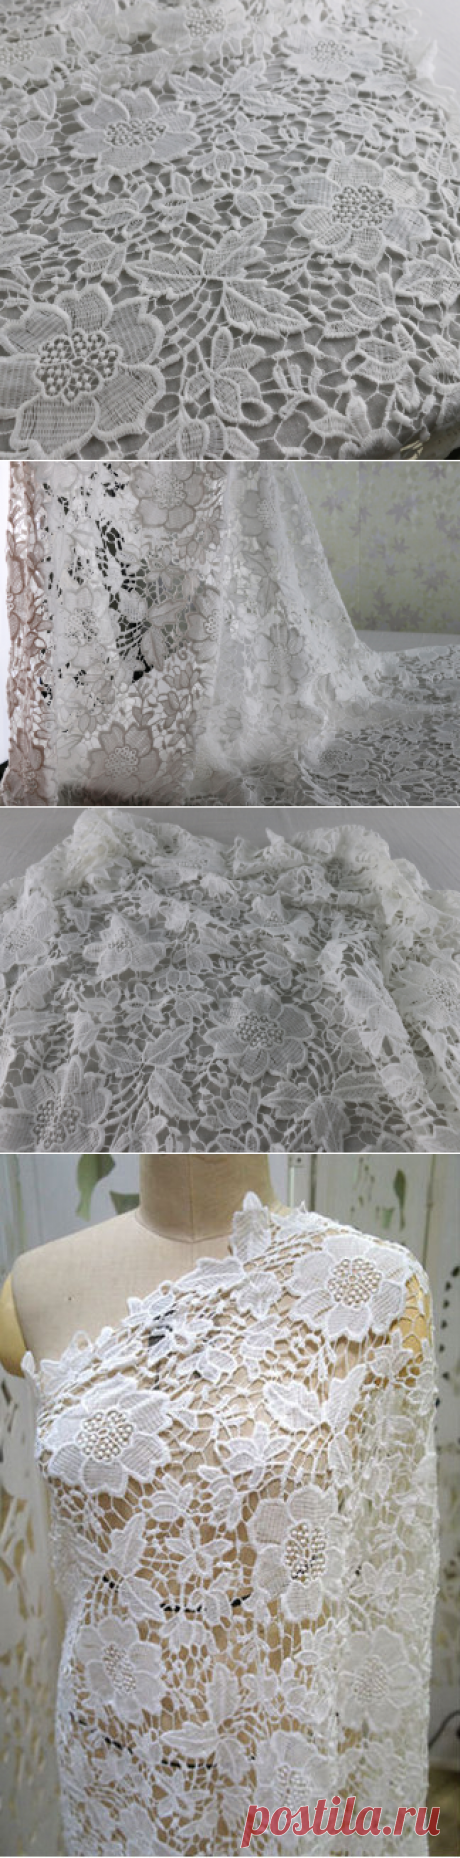 Оптовая продажа Букет Аксессуары материал шнурка цветы гипюр ткани для свадебное платье белое по двору купить на AliExpress